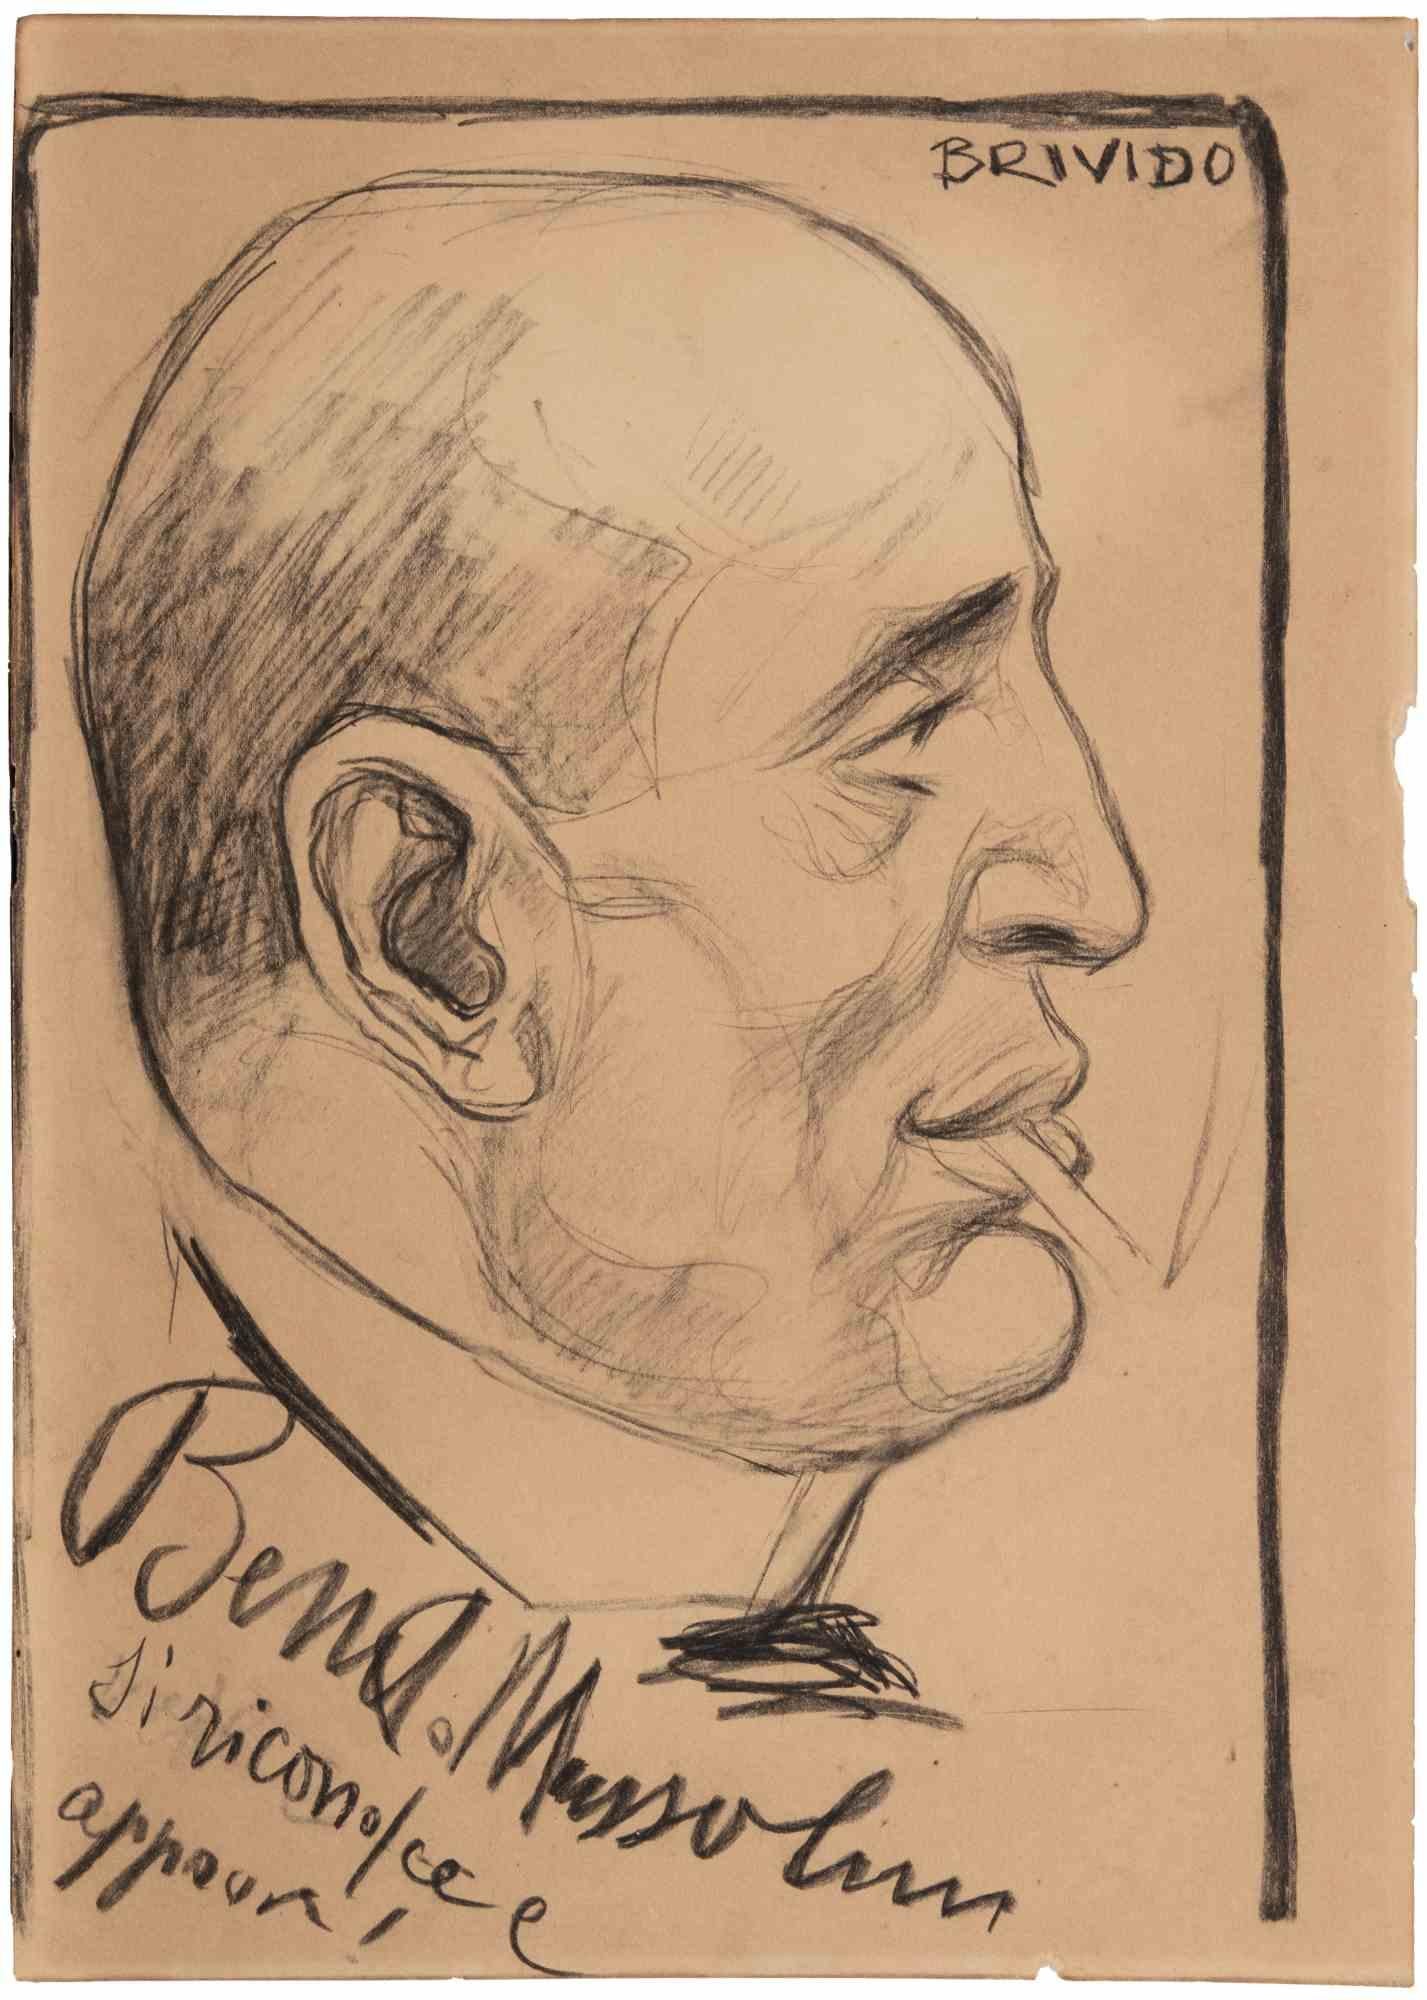 Duce Portrait ist ein modernes Kunstwerk des Künstlers Alberto Manetti (auch bekannt als Brivido).

Bleistift und Zeichenkohle auf Papier.

Handsigniert am oberen rechten Rand.

Aufschrift: "Benito Mussolini anerkennt und billigt!" unten